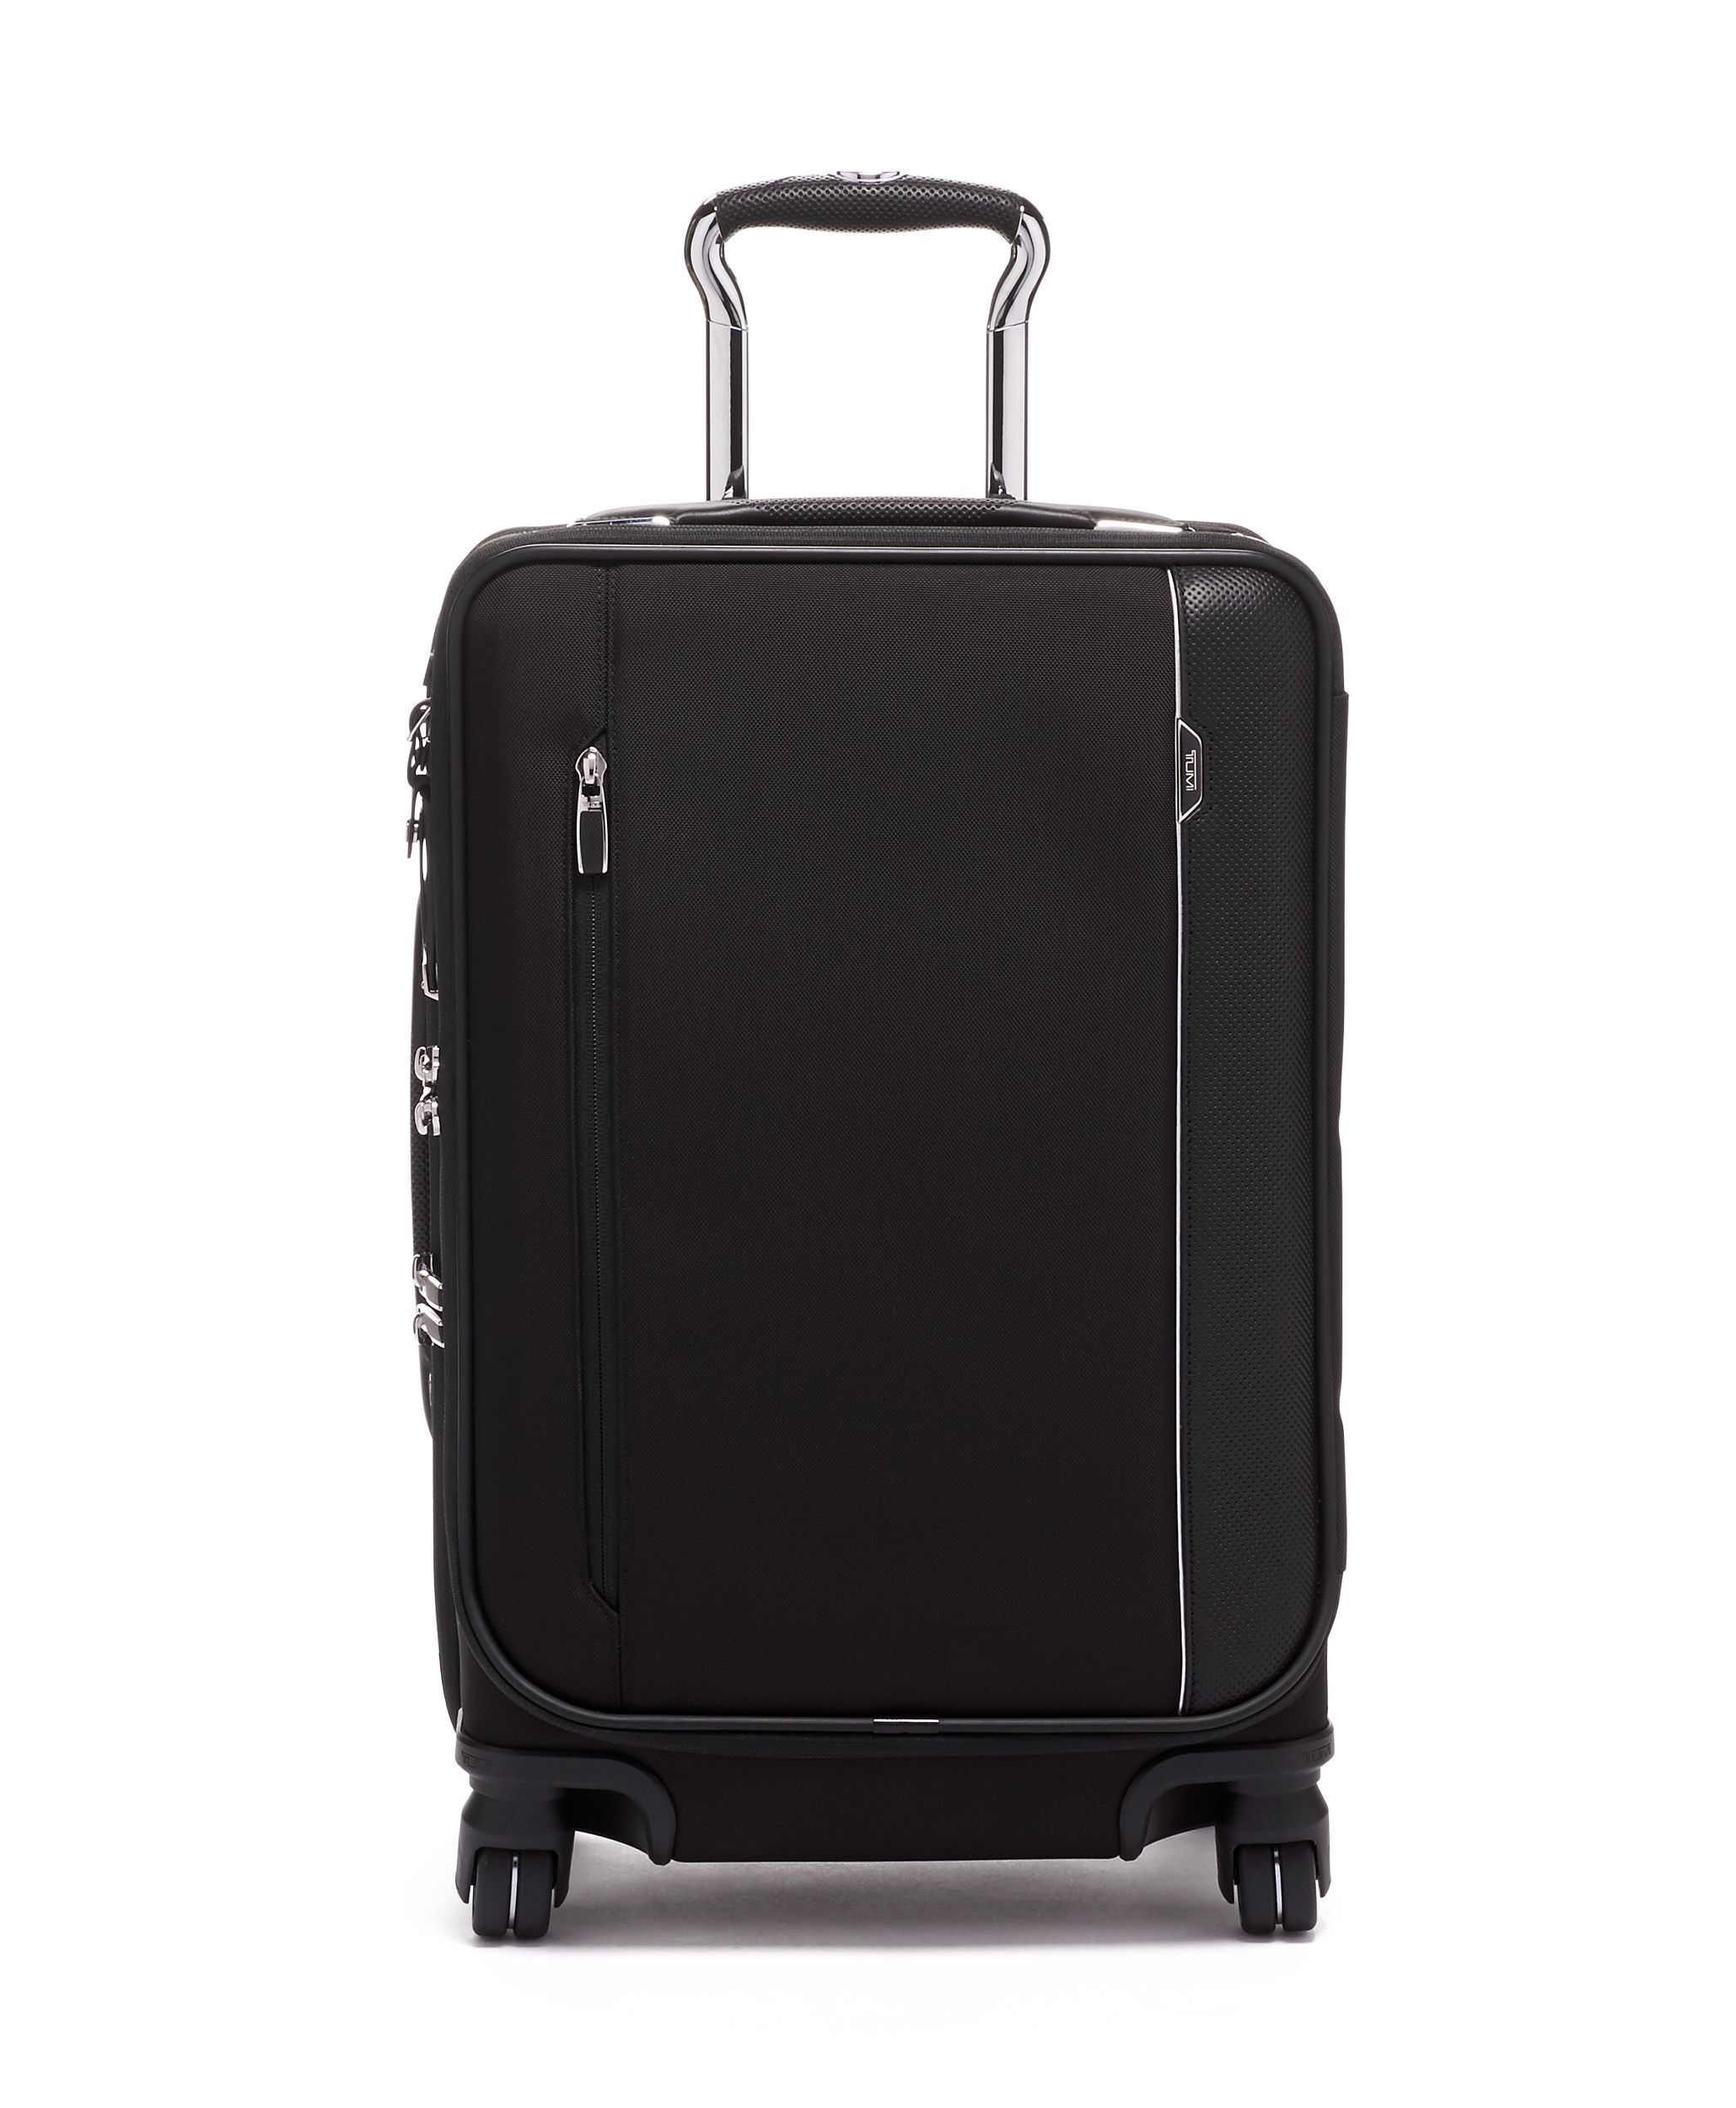 クーポン対象外】 TUMI 4輪スーツケース 機内持ち込みサイズ 22060EG2 ...